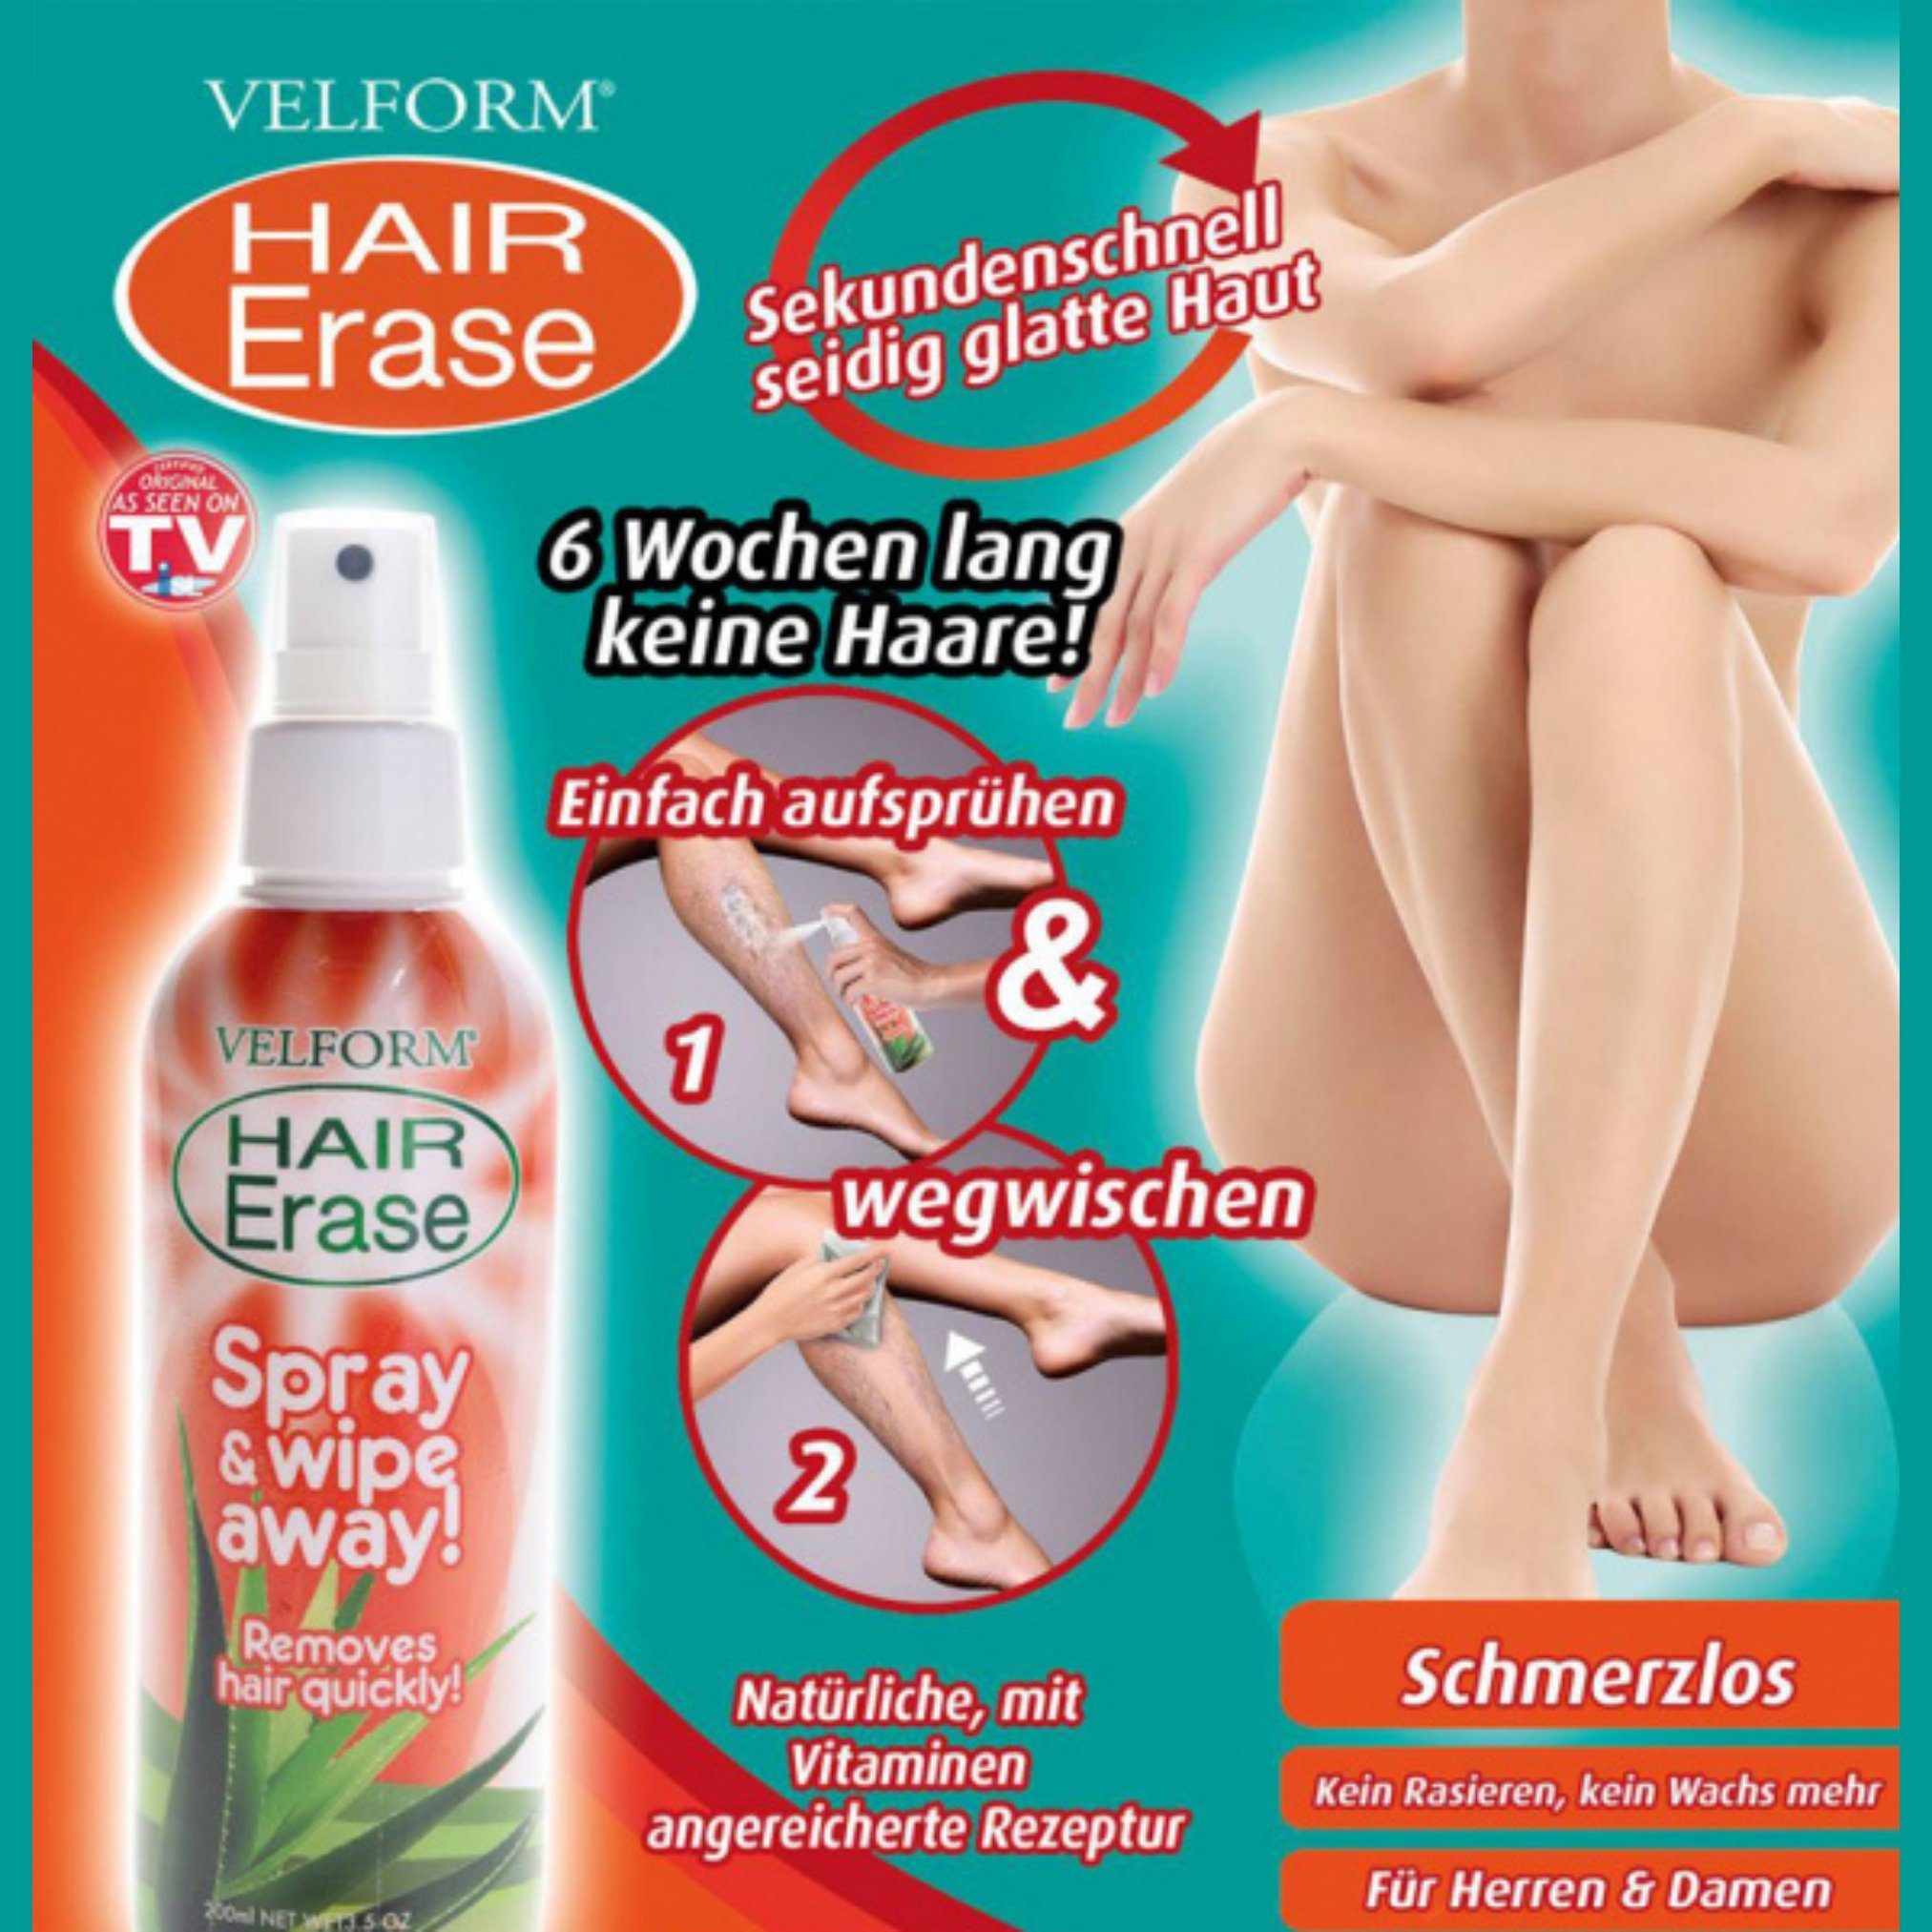 E, Aloe 2 Velform®️ Erase St., Orangenextrakt und Enthaarungsspray, Velform® Hair Vera mit Vitamin Zitrusfrüchten, Enthaarungscreme